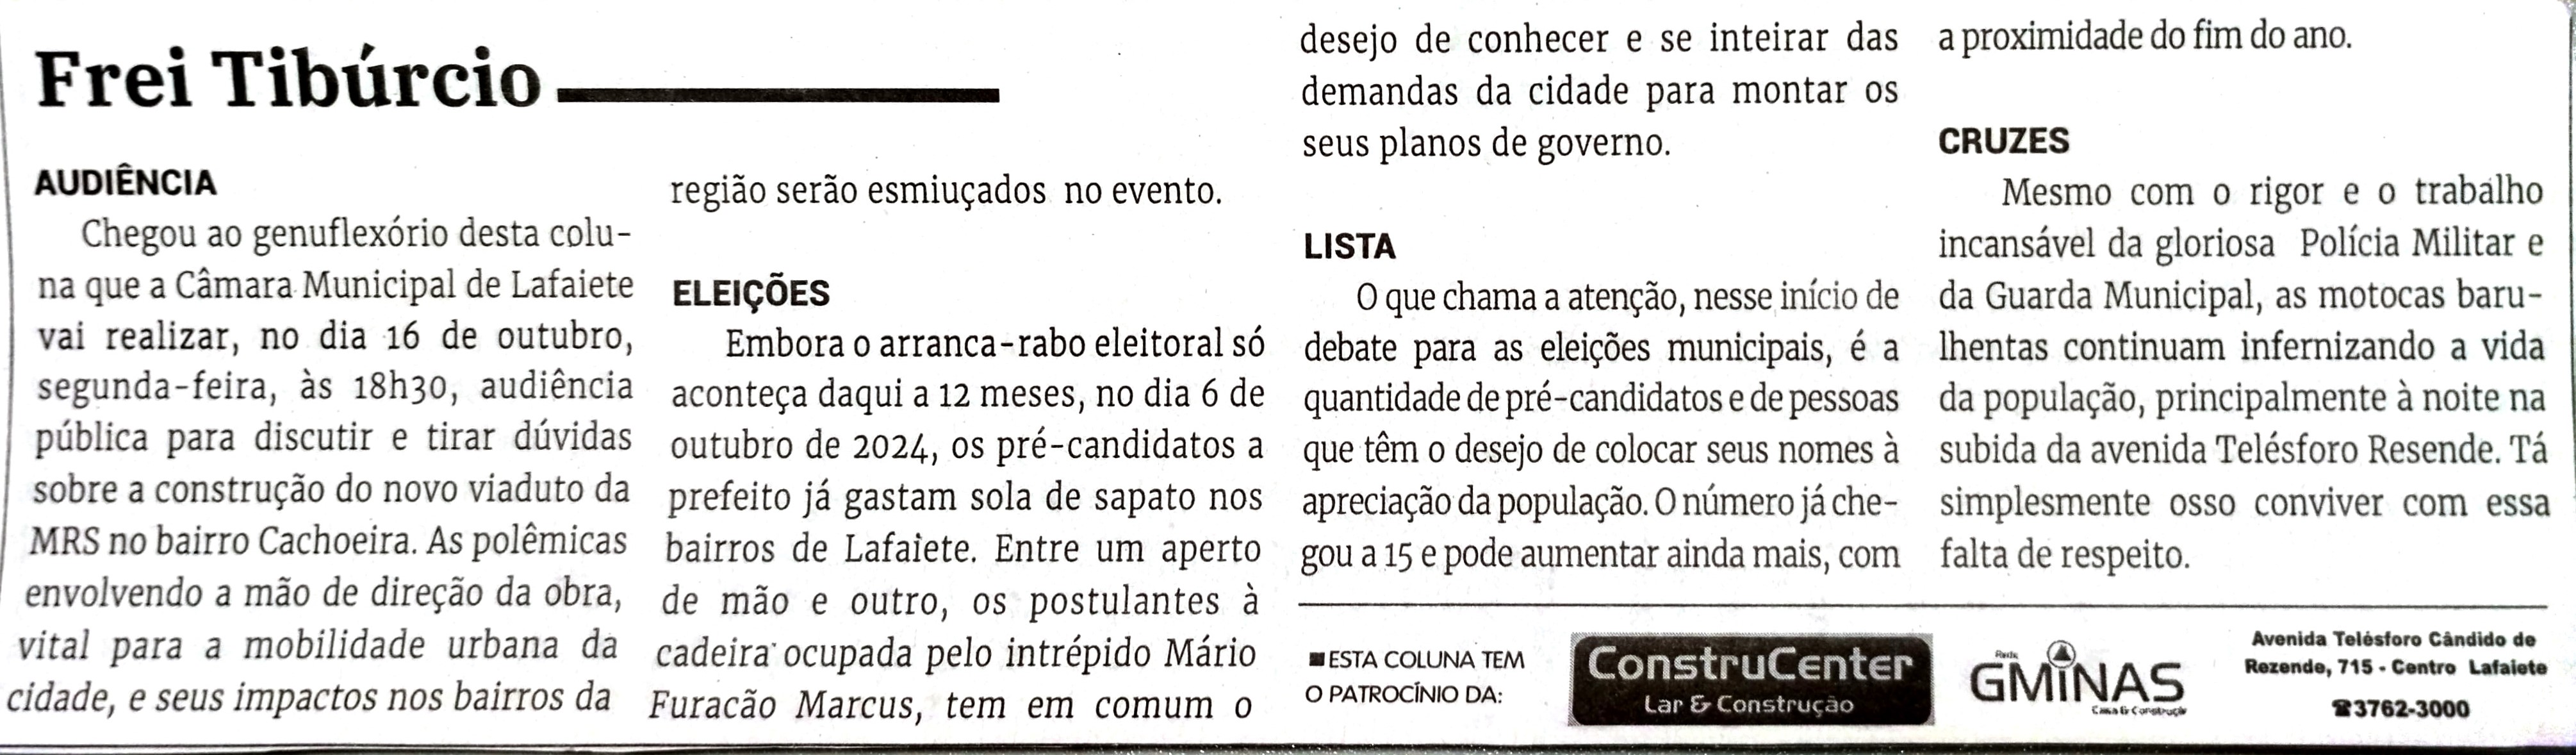 Frei Tibúrcio. Jornal Correio da Cidade, Conselheiro Lafaiete de 07 a 13 de out. de 2023, 1700ª ed., Opinião, p. 06.